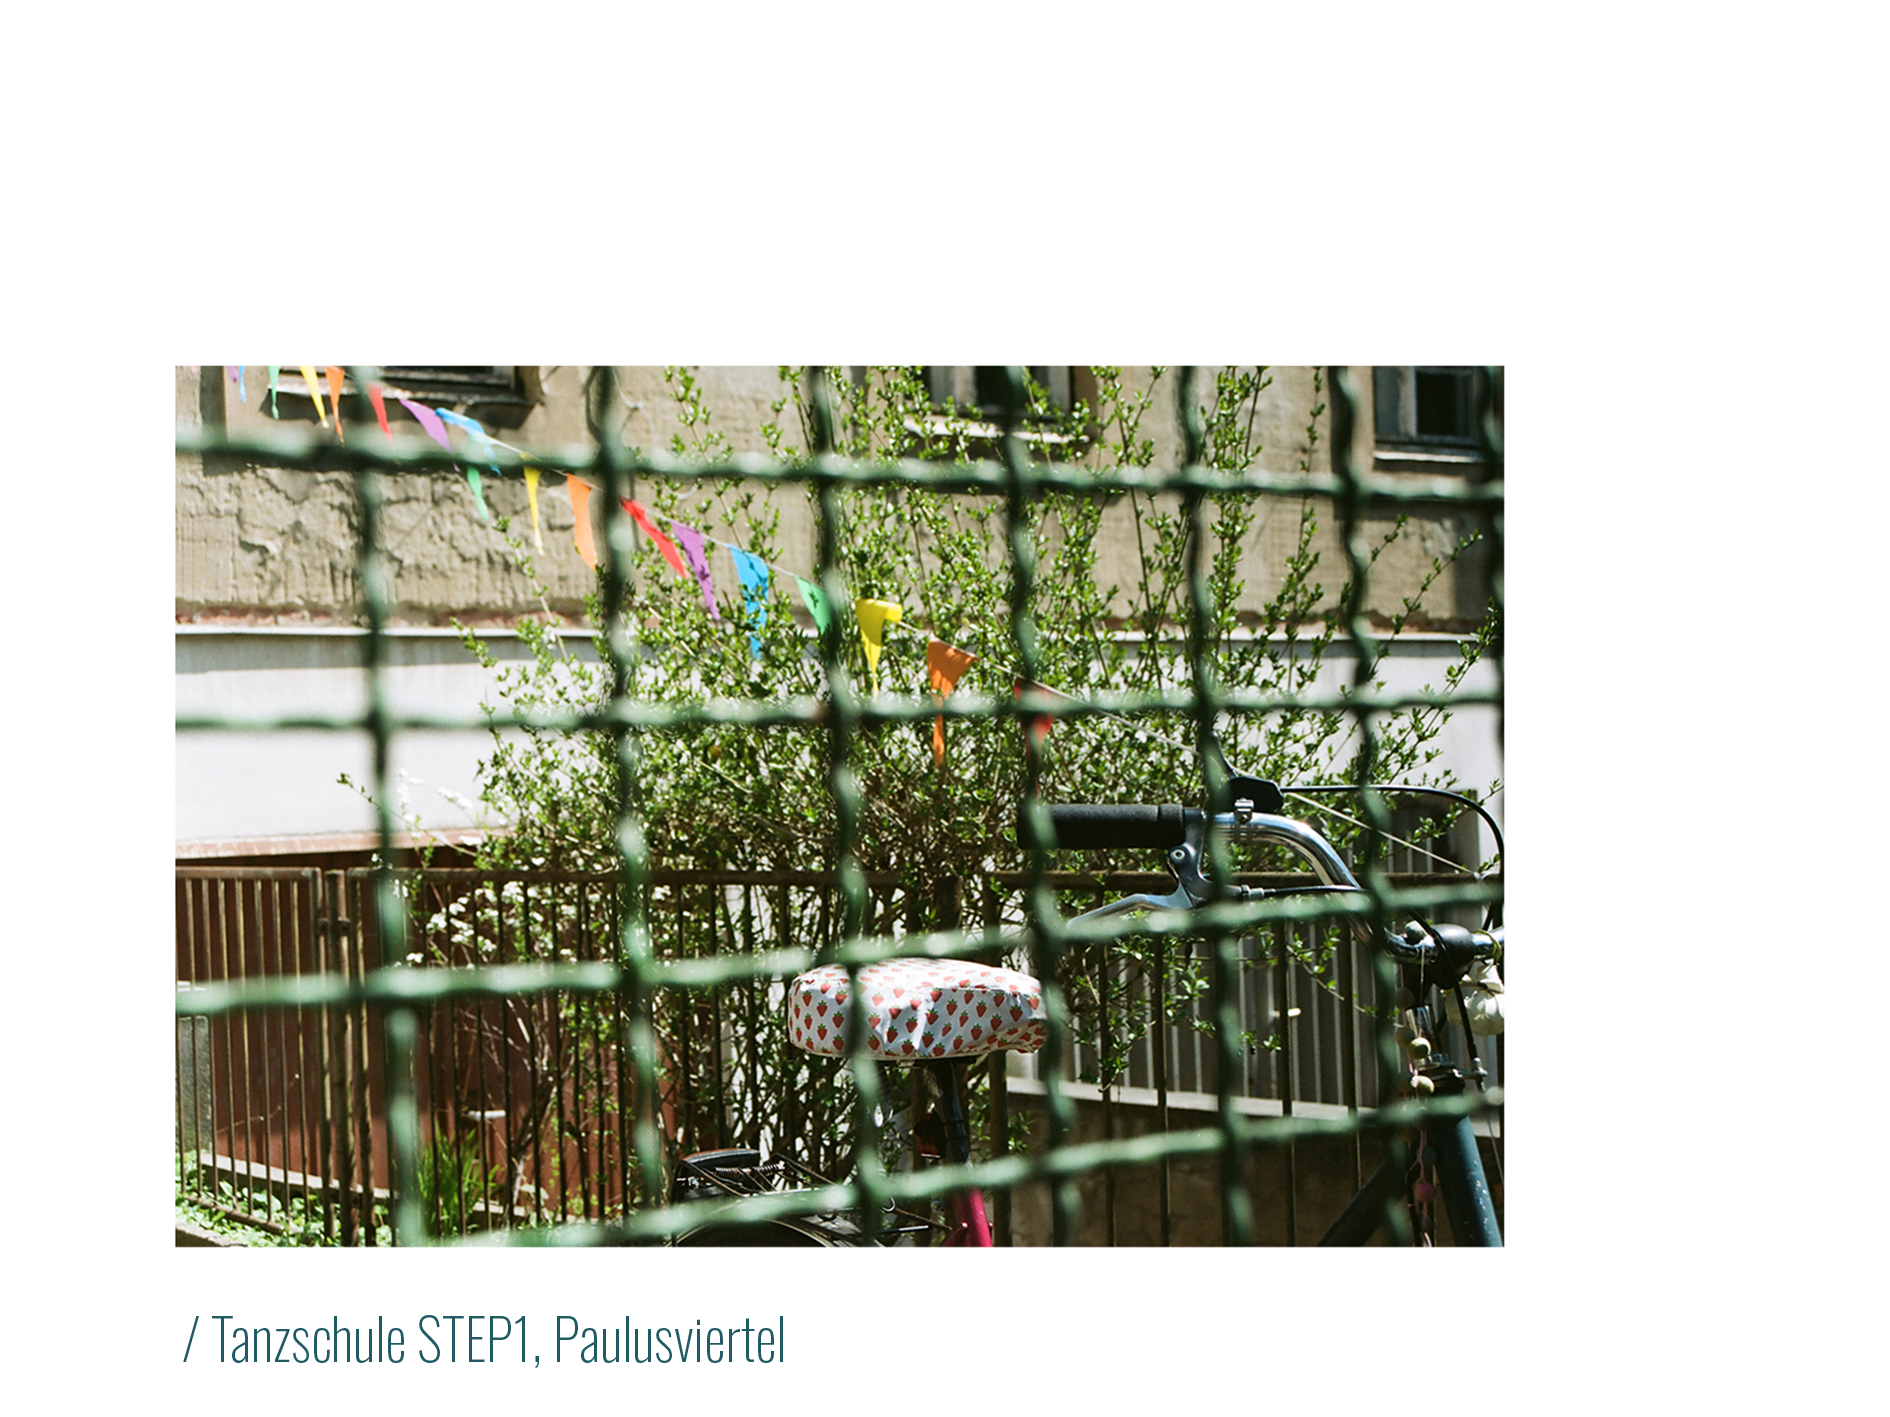 In Kontrast zu Tanzschule STEP1, Paulusviertel:
            Durch einen Zaun blickt man auf ein Fahrrad, auf dessen Sattelschutz kleine rote Erdbeeren abgebildet sind.
            Im Hintergrund weht eine bunte Girlande mit Fähnchen. 